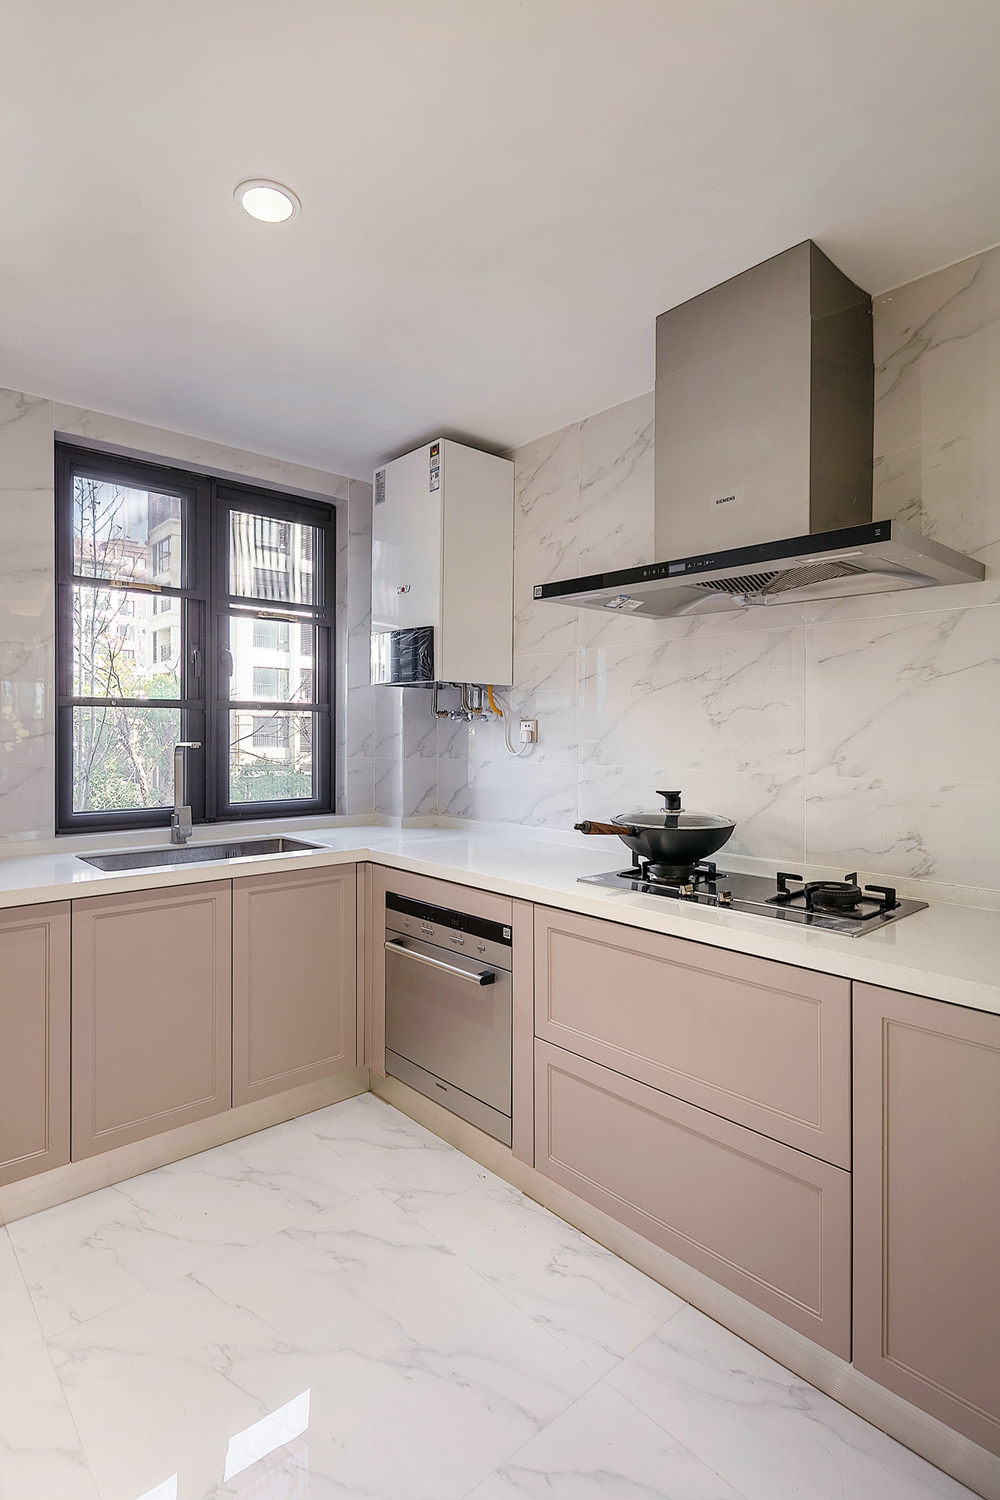 粉色橱柜构成厨房一幅和谐的画面，在白色大理石背景下体现出空间的轻奢质感。